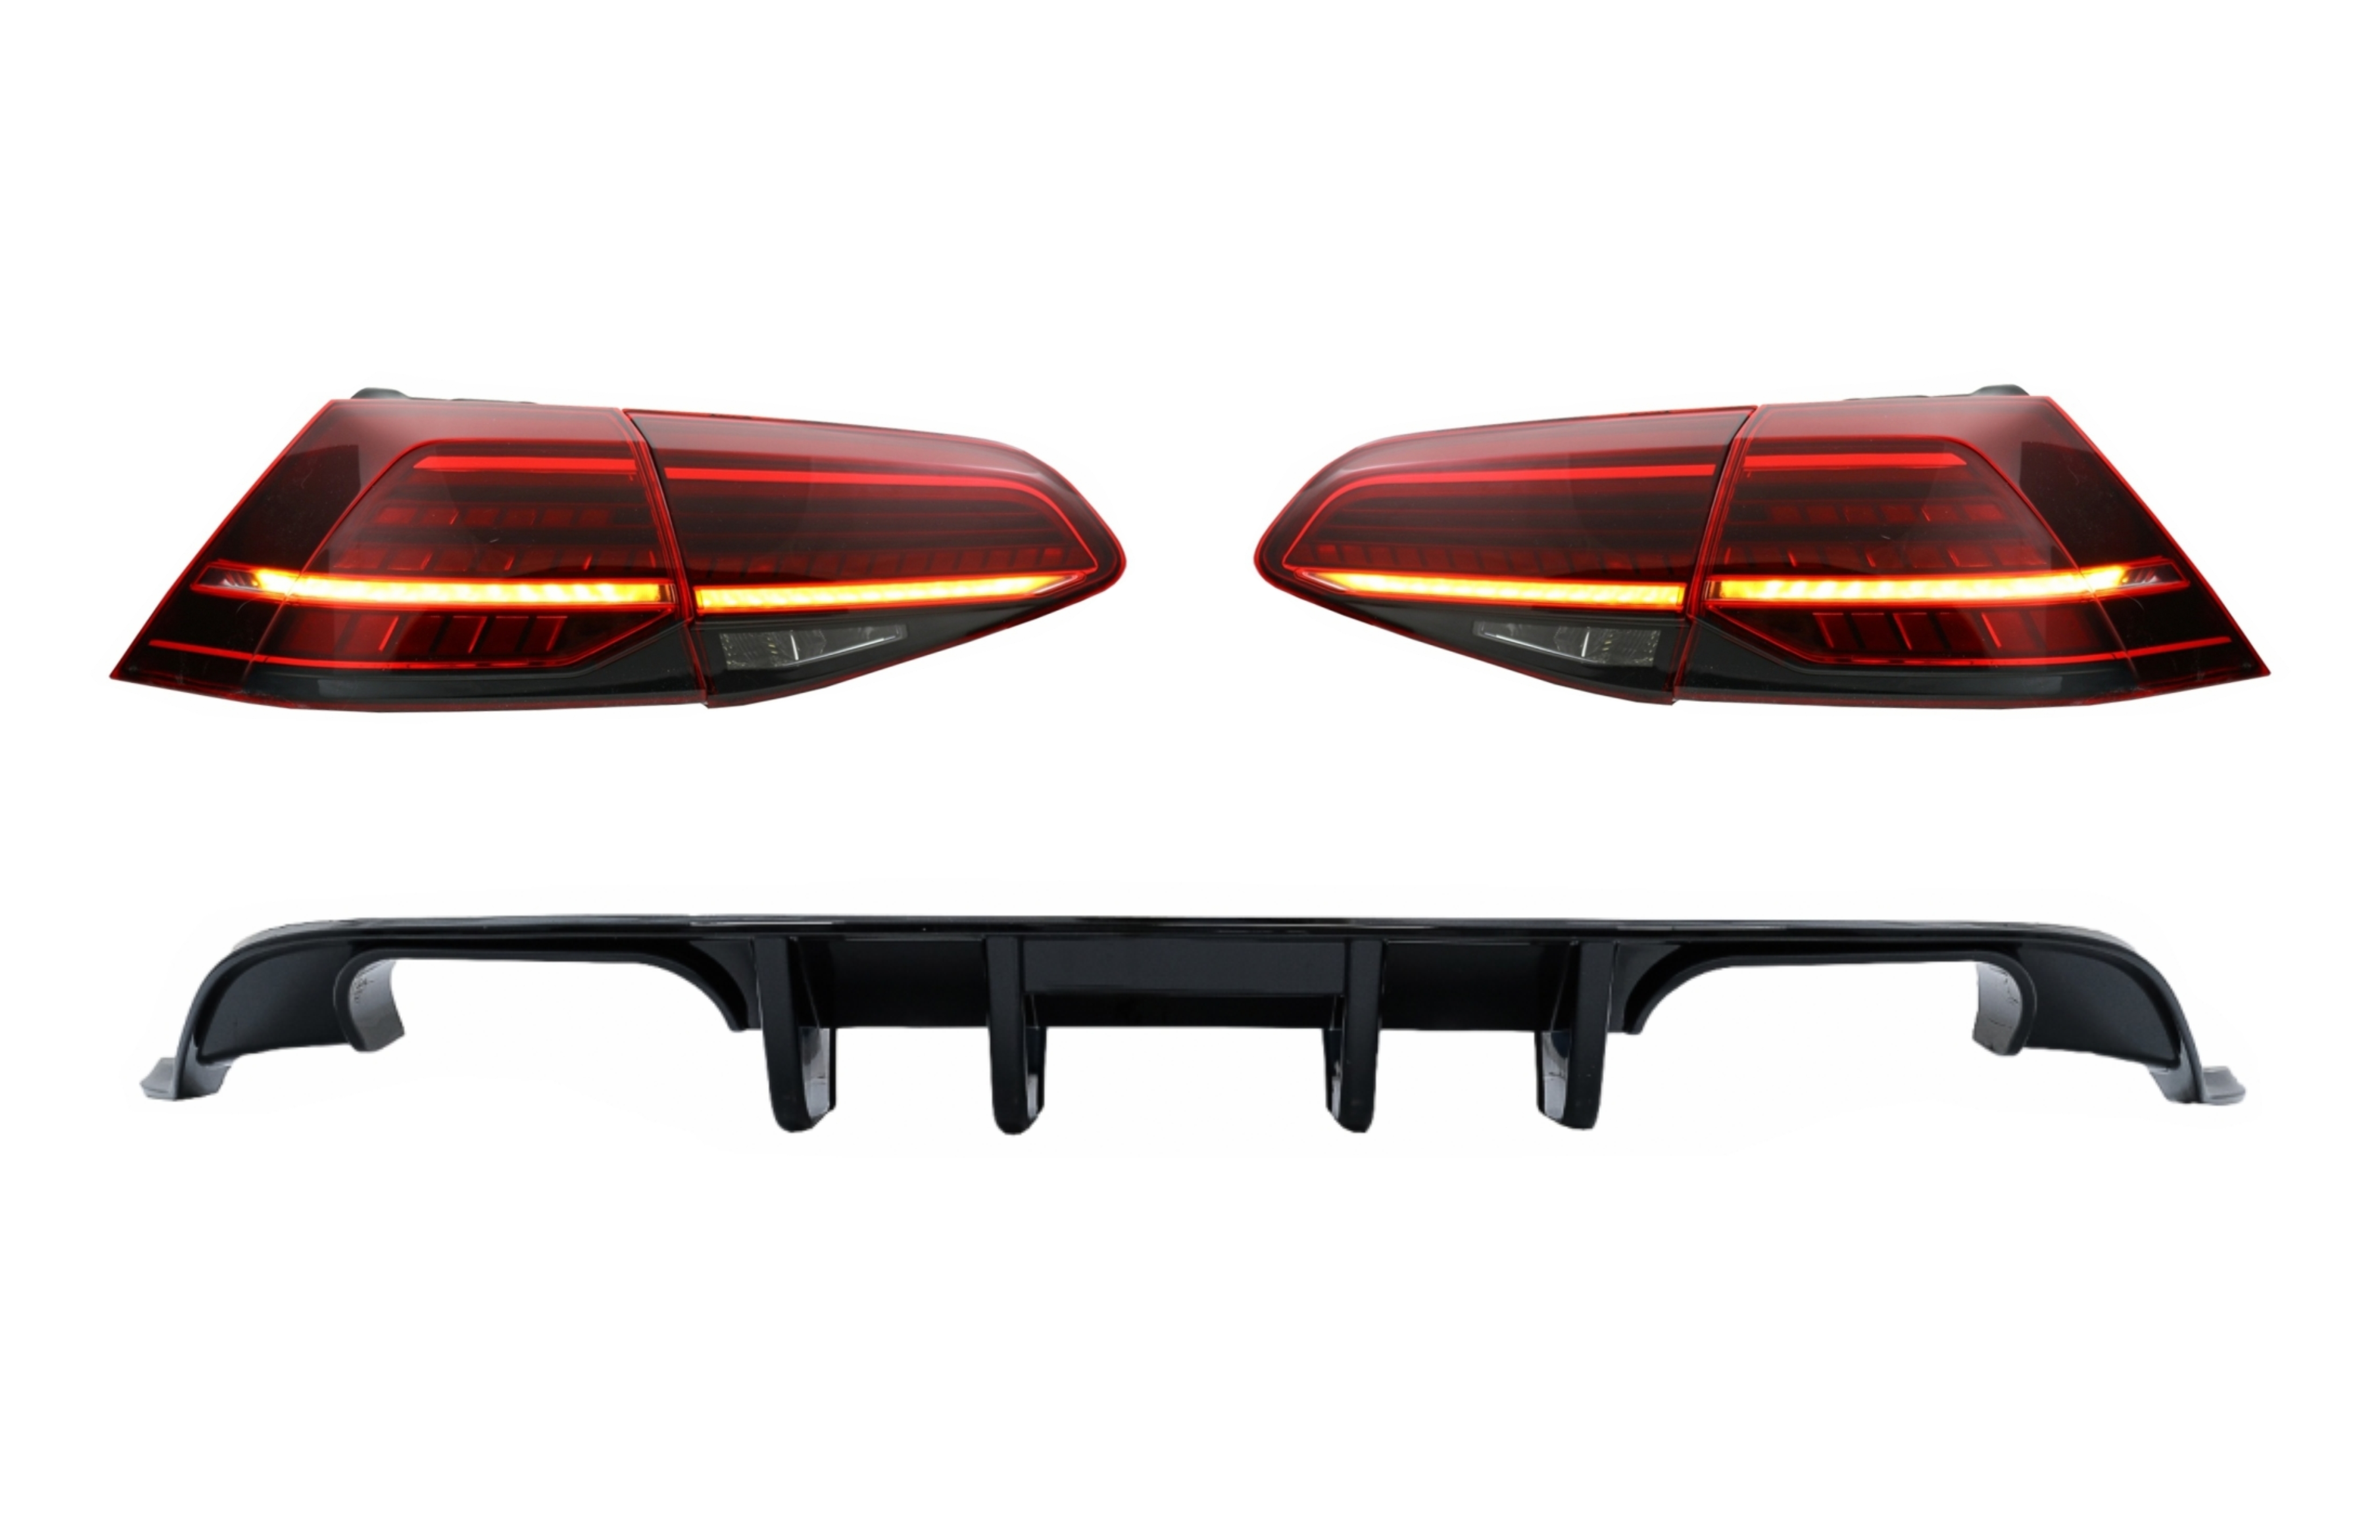 Hátsó lökhárító légbefúvó teljes LED-es hátsó lámpákkal, dinamikus szekvenciális kanyarodó lámpákkal, sötét cseresznyepiros VW Golf 7.5 (2017-2019) R Look modellhez